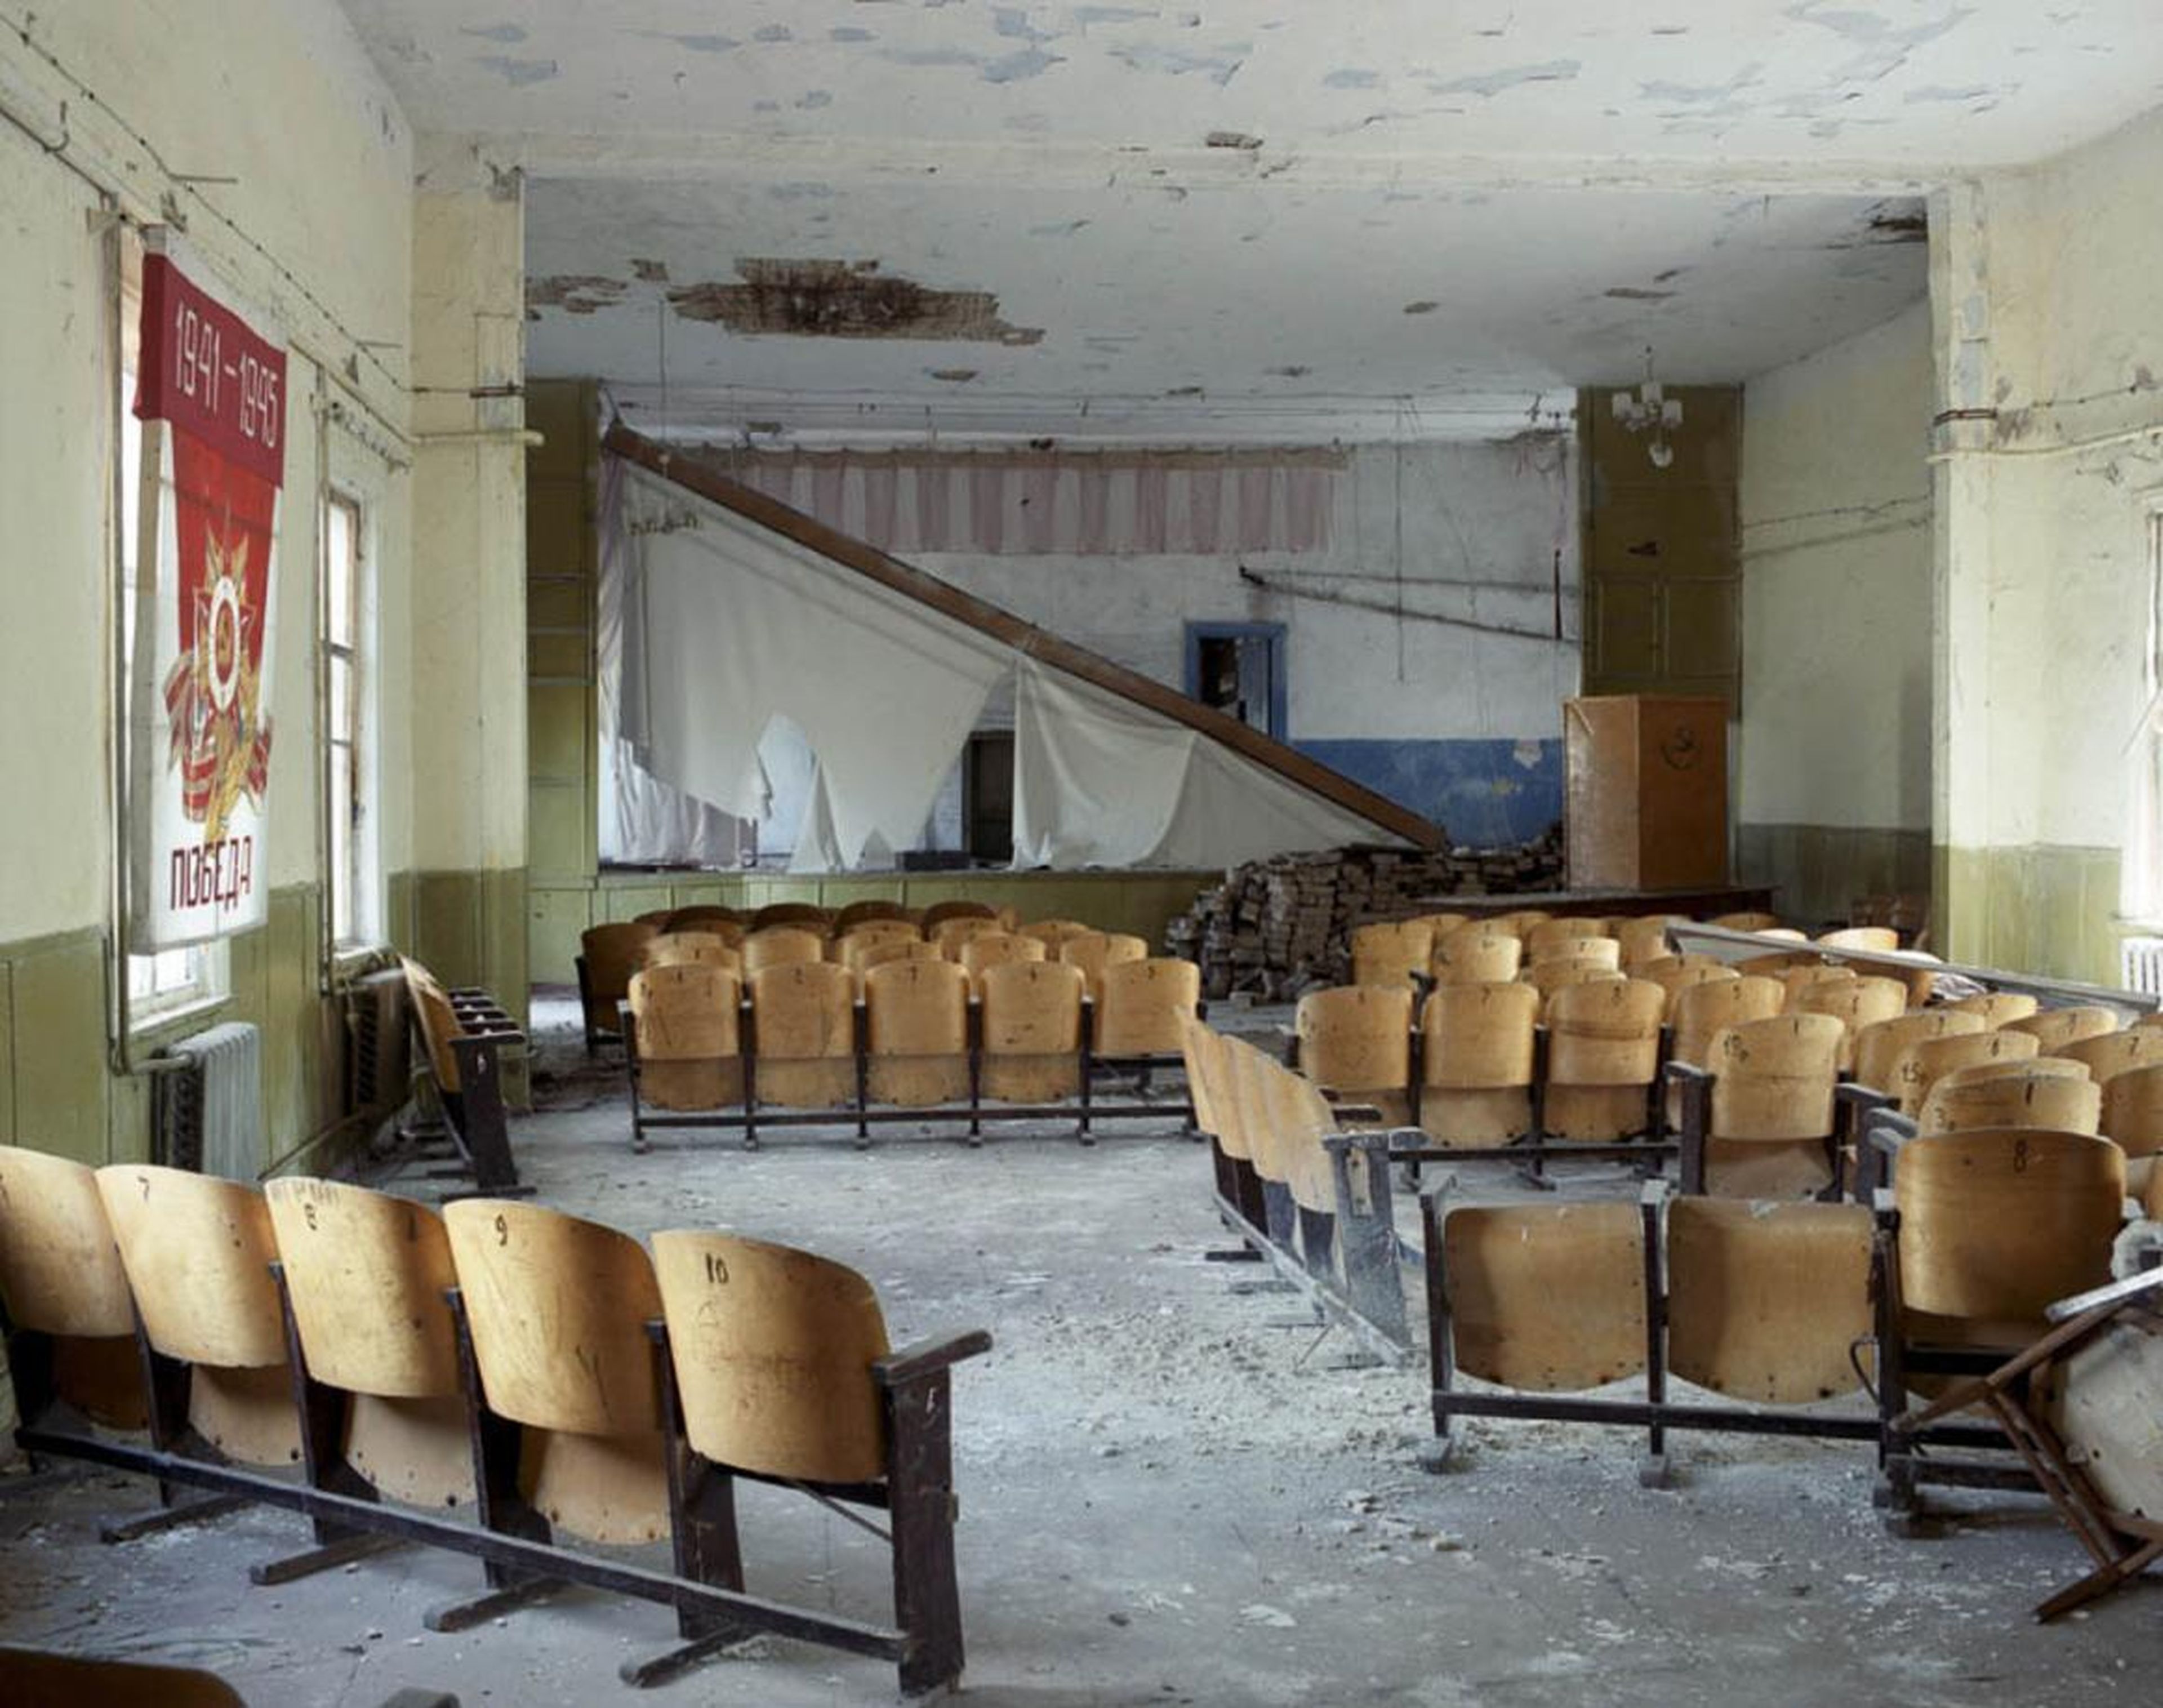 Auditorio de un colegio, Pripyat, 2008.